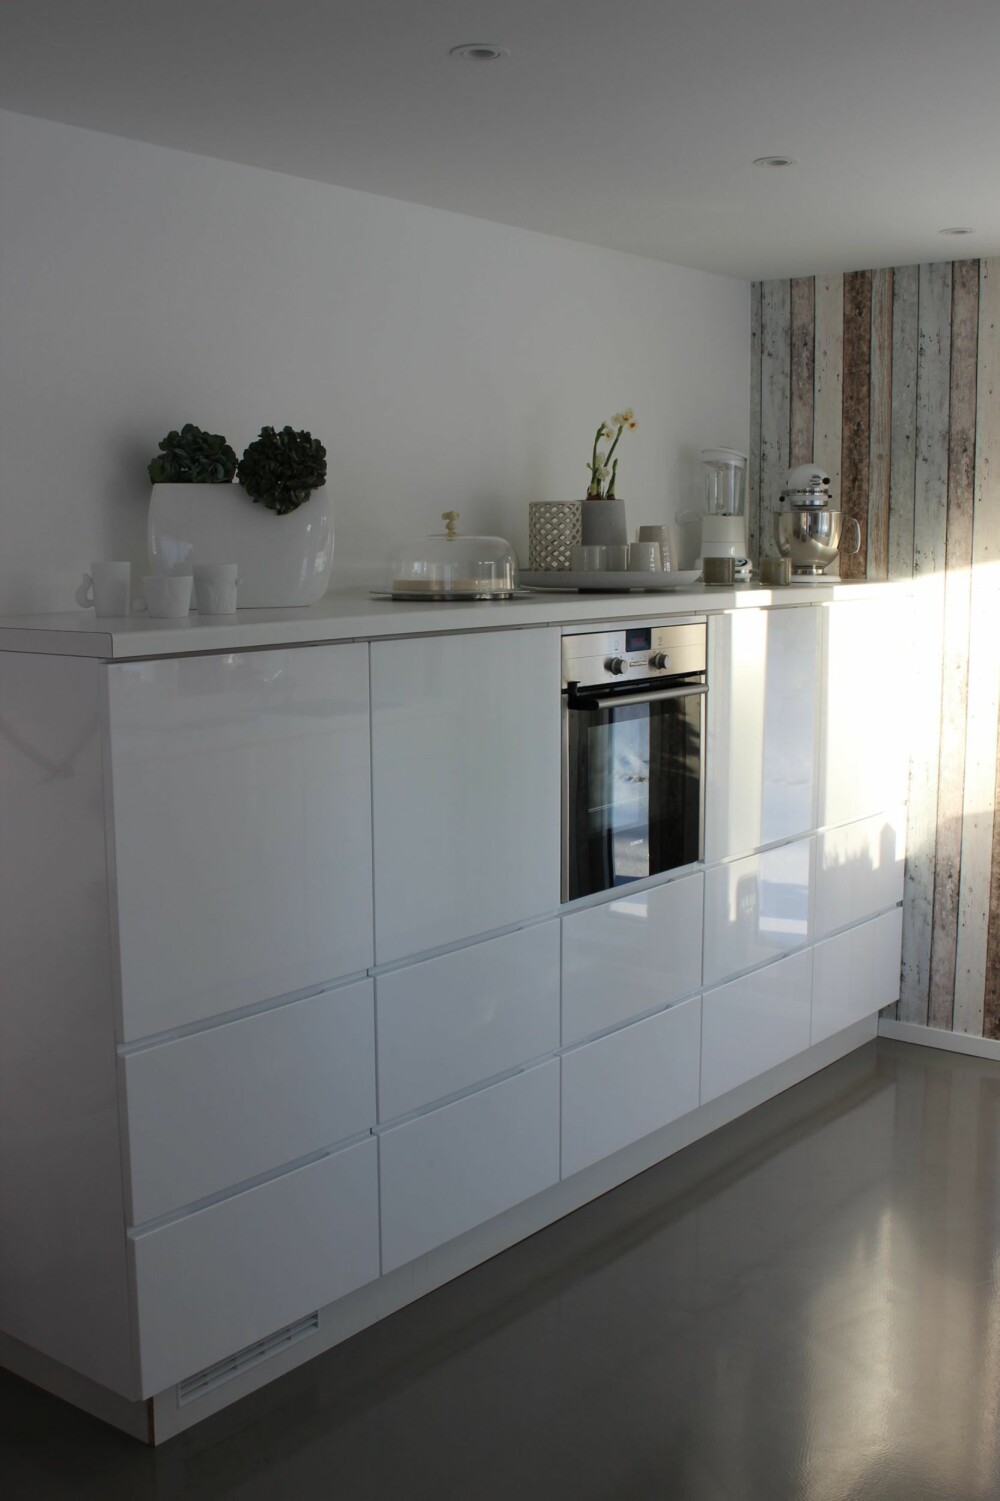 Kjøkken med moderne hvite fronter står i kontrast til den rustikke veggen med panellignende tapet.